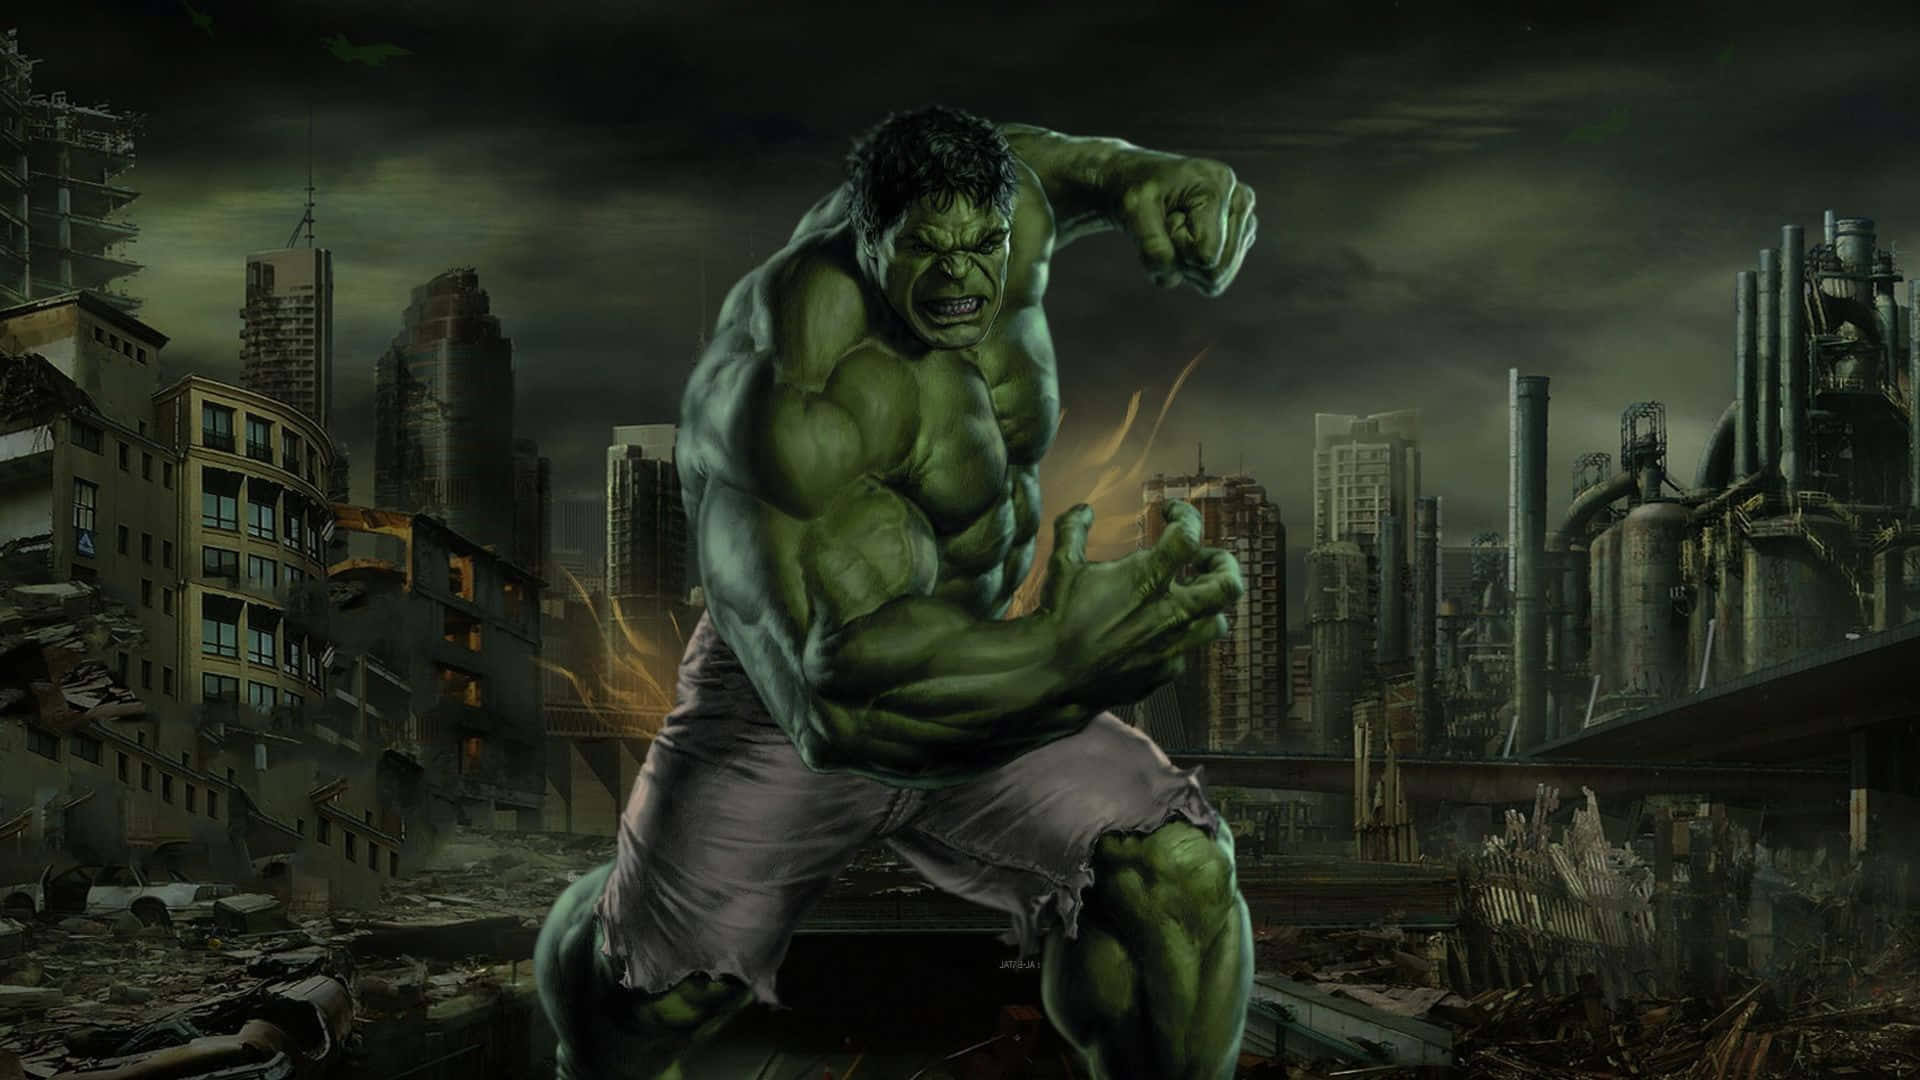 Ansich Selbst Zu Glauben, Kann Dich Zum Hulk Werden Lassen.